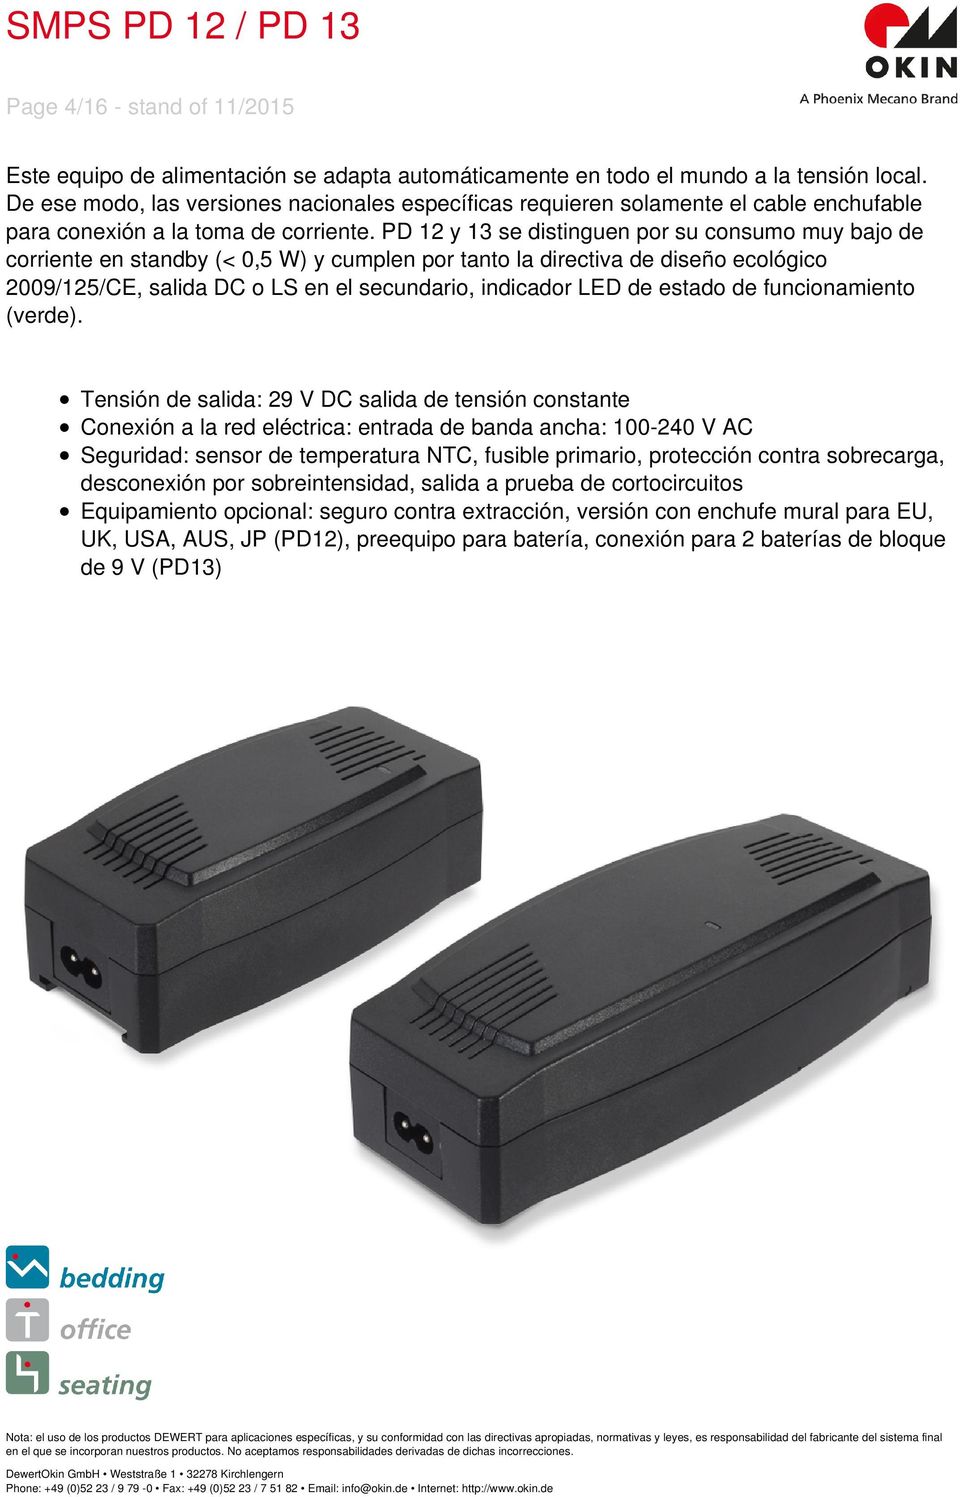 PD 12 y 13 se distinguen por su consumo muy bajo de corriente en standby (< 0,5 W) y cumplen por tanto la directiva de diseño ecológico 2009/125/CE, salida DC o LS en el secundario, indicador LED de